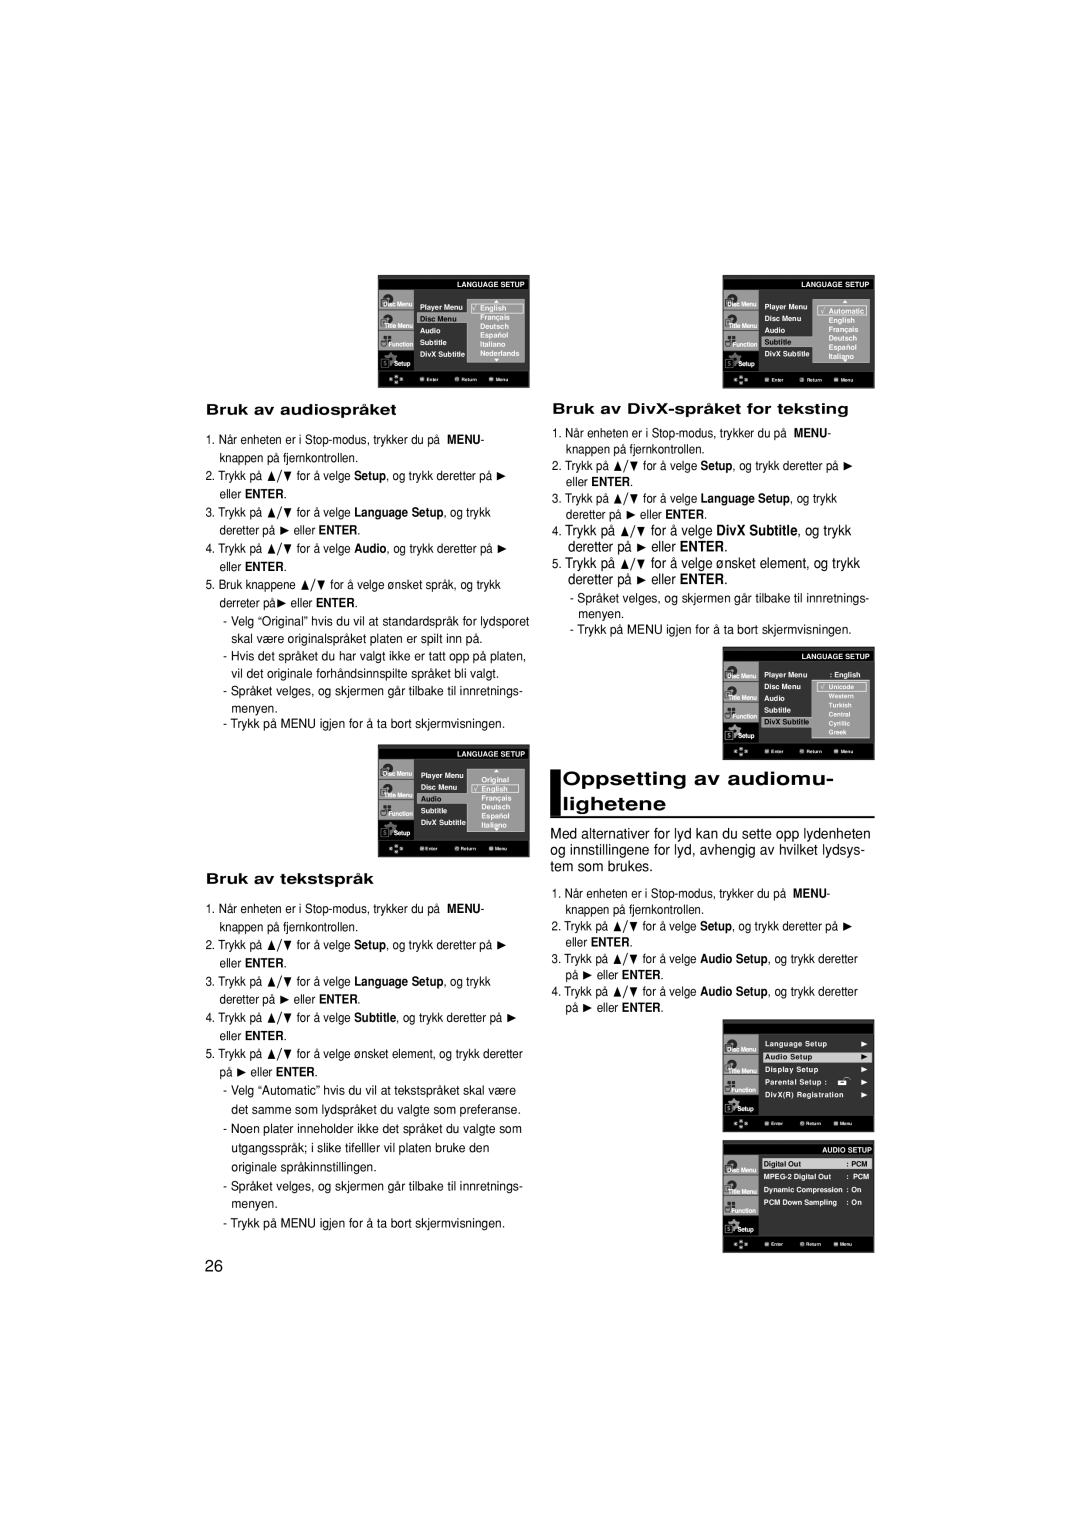 Samsung DVD-F1080W/XEE, DVD-F1080/XEE manual Oppsetting av audiomu- lighetene, Bruk av audiospråket, Bruk av tekstspråk 